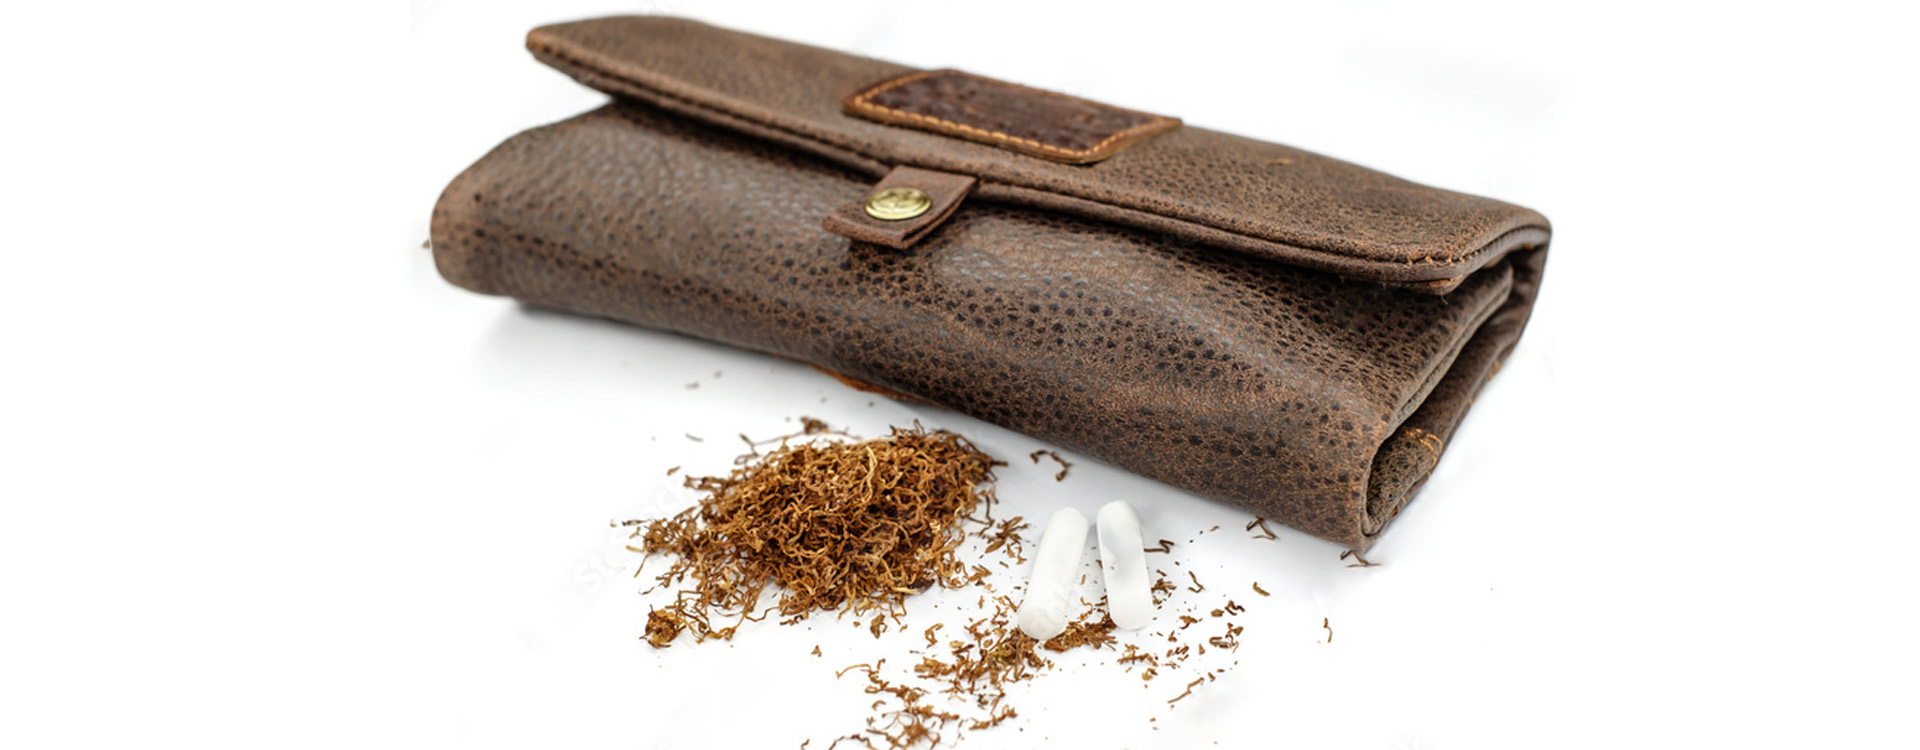 Kožené puzdro na tabak uzavreté na bielom pozadí, rozsypaný tabak a filtre